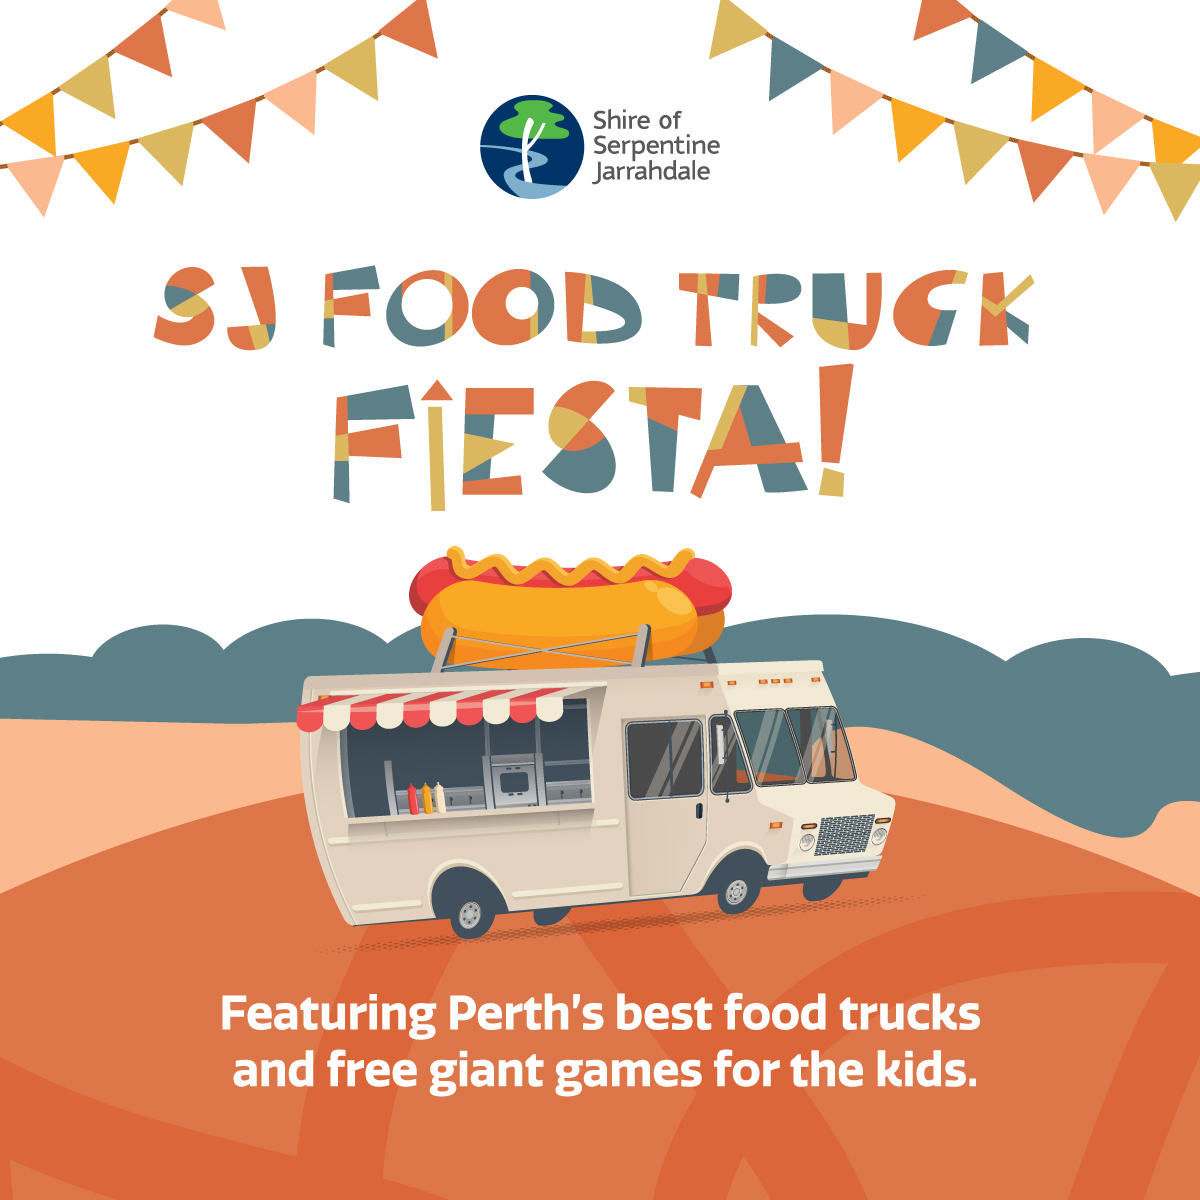 SJ Food Truck Fiesta